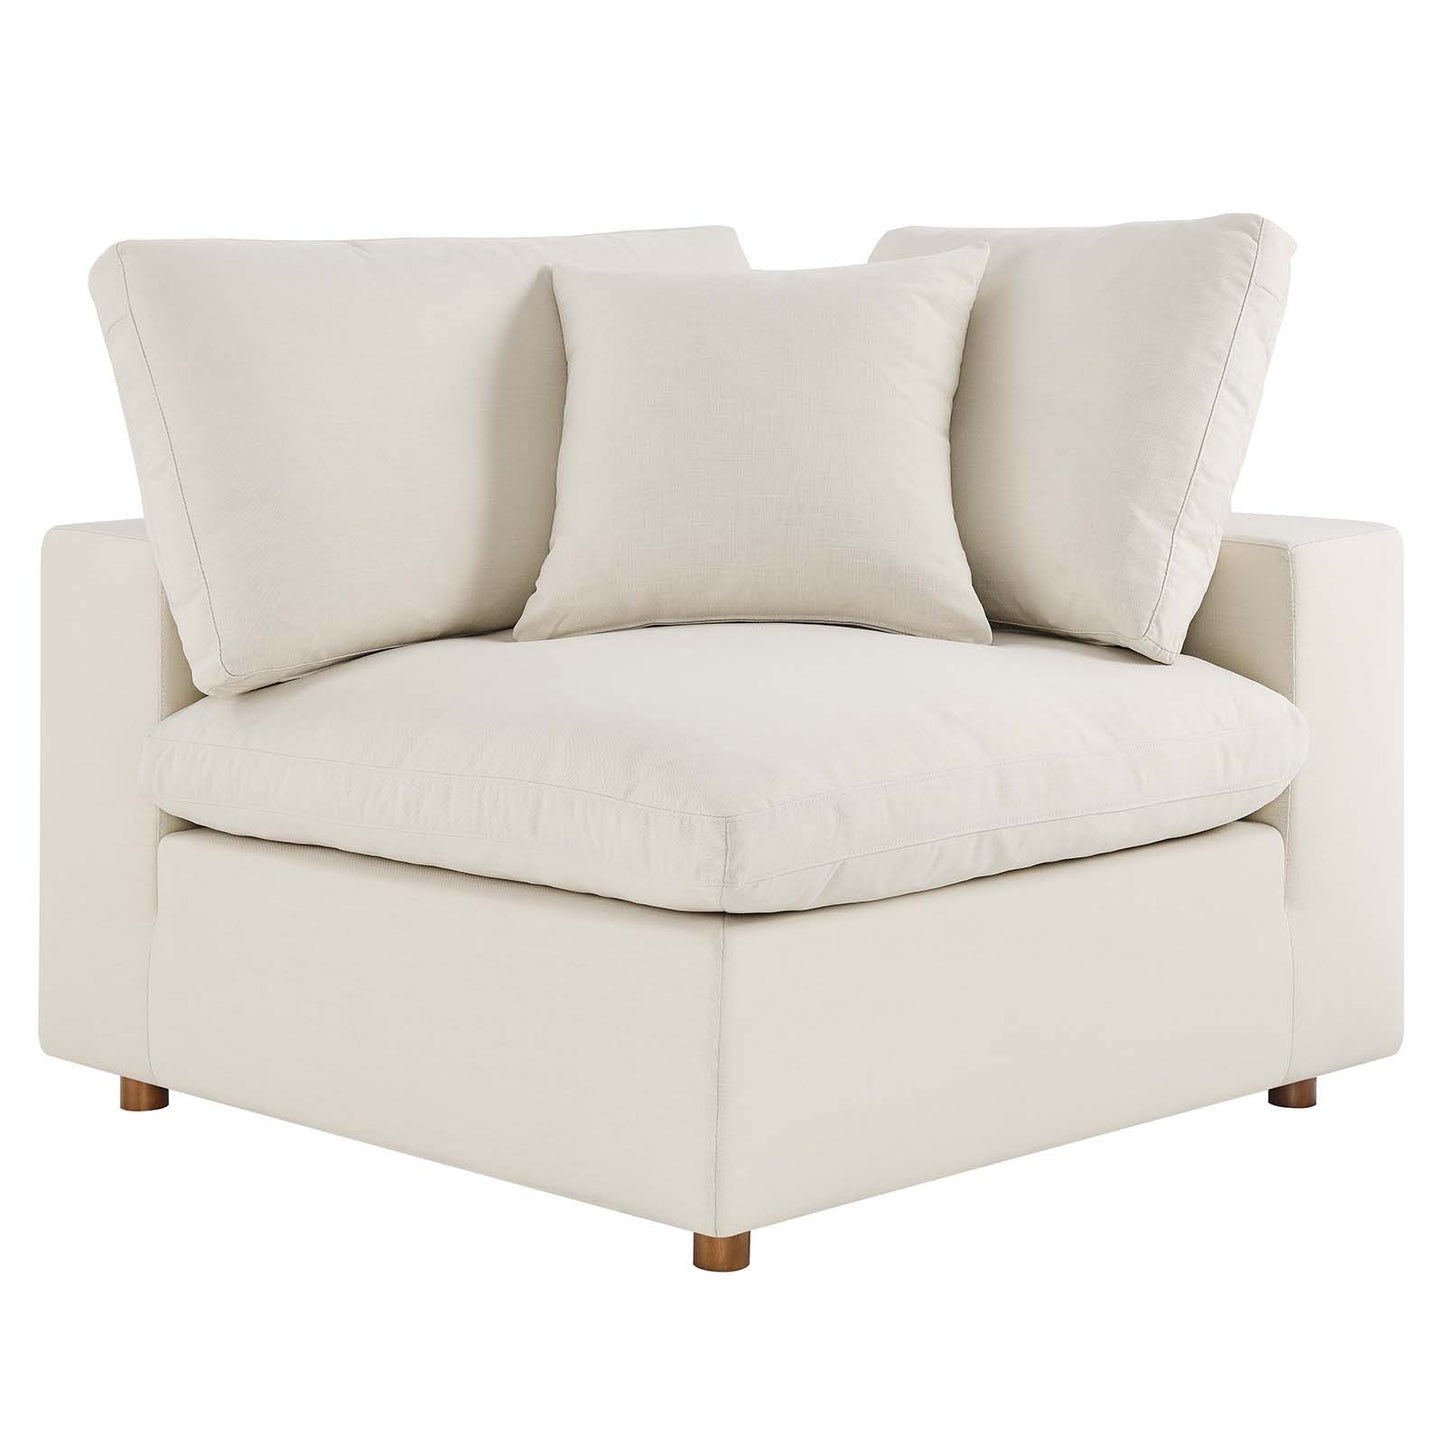 Commix Down Filled Overstuffed 3 Piece Sectional Sofa Set Light Beige EEI-3355-LBG